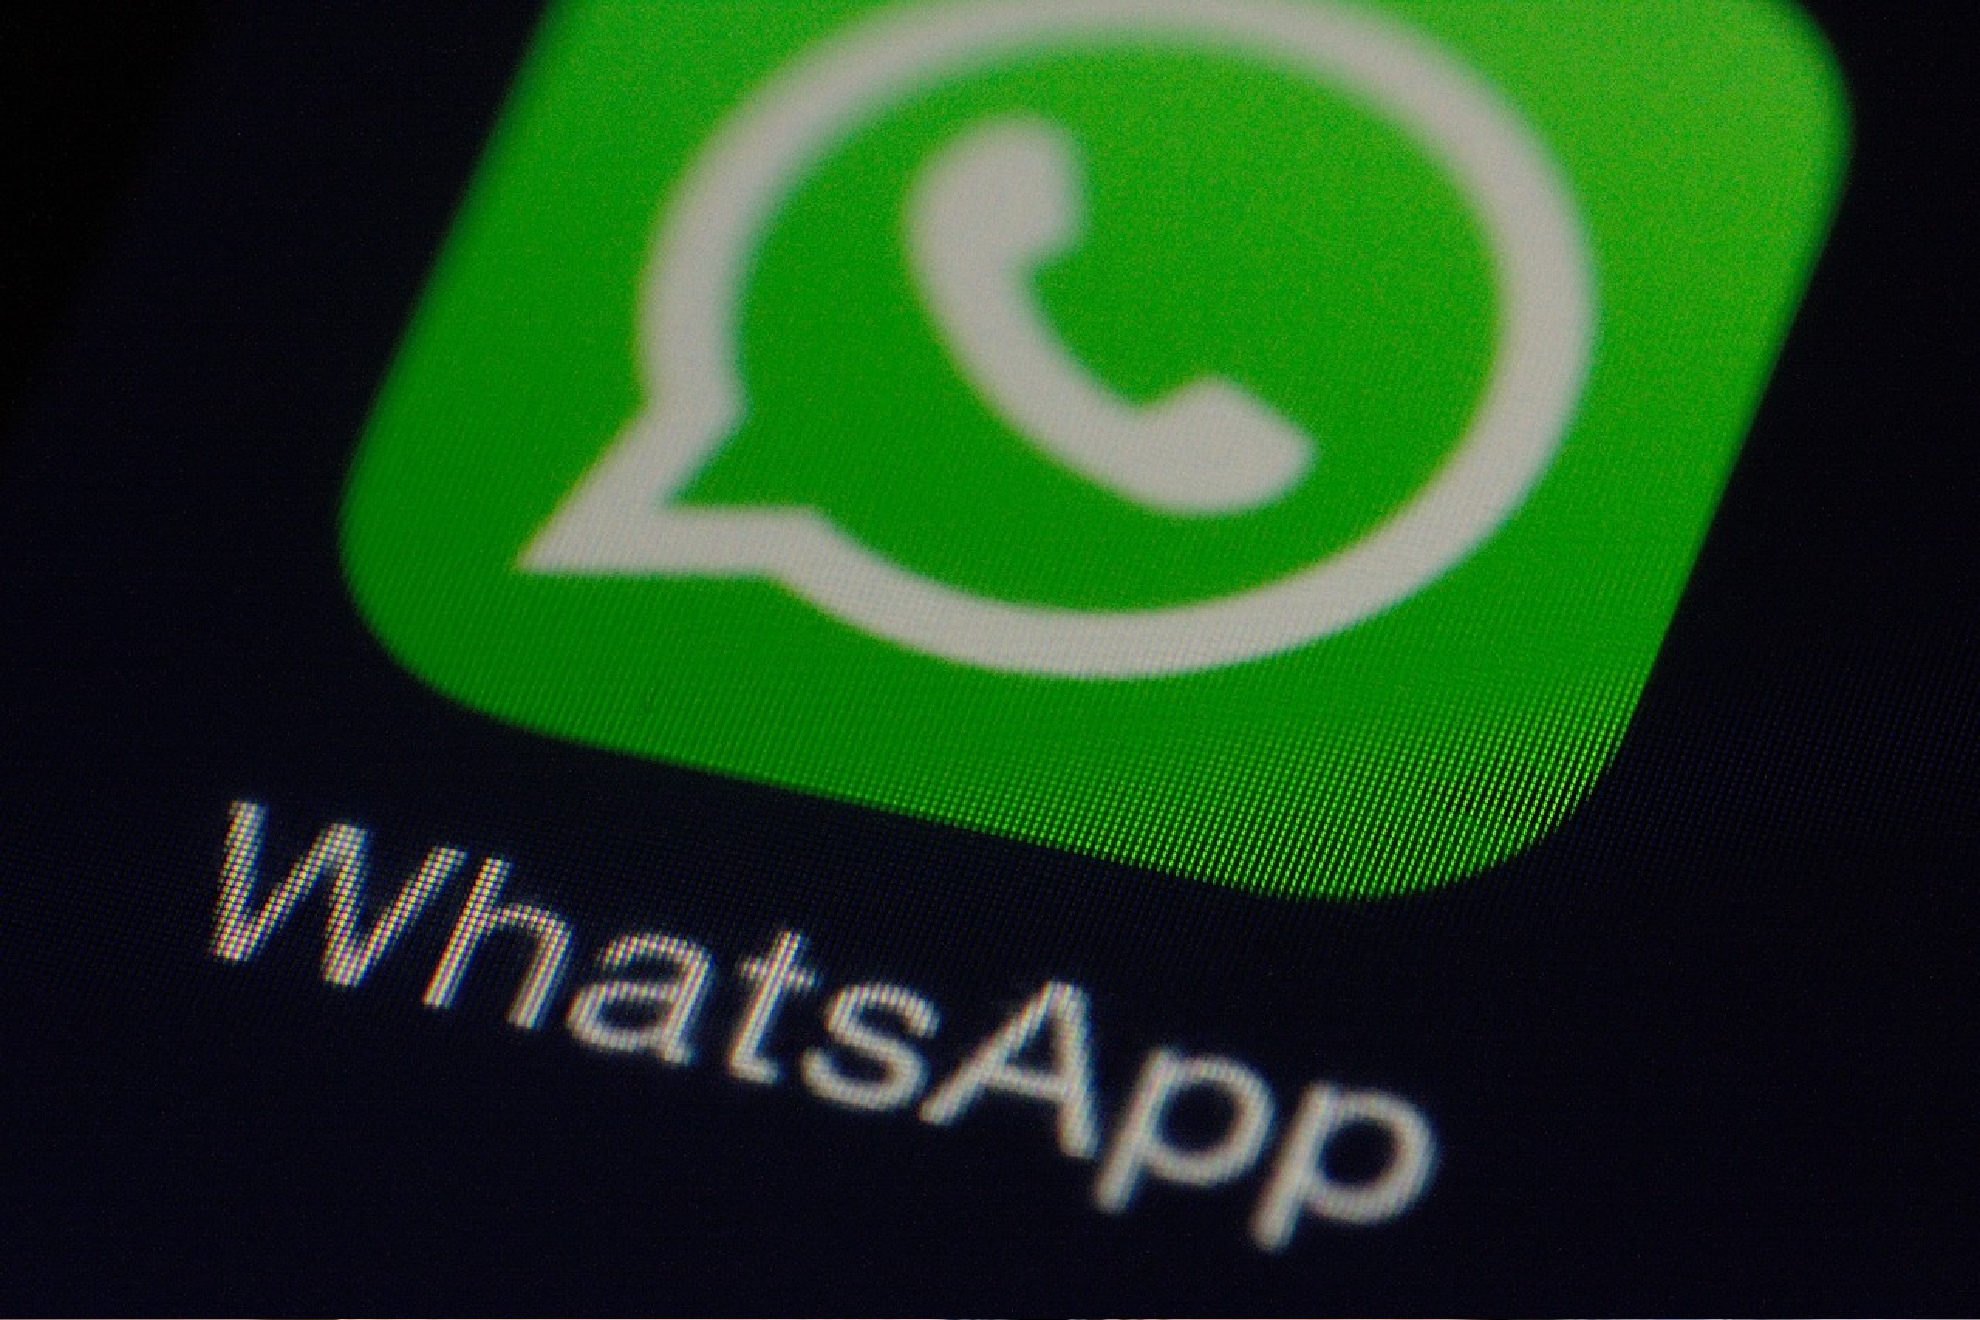 La más reciente actualización de WhatsApp permite enviar imágenes para después desaparecer del chat.